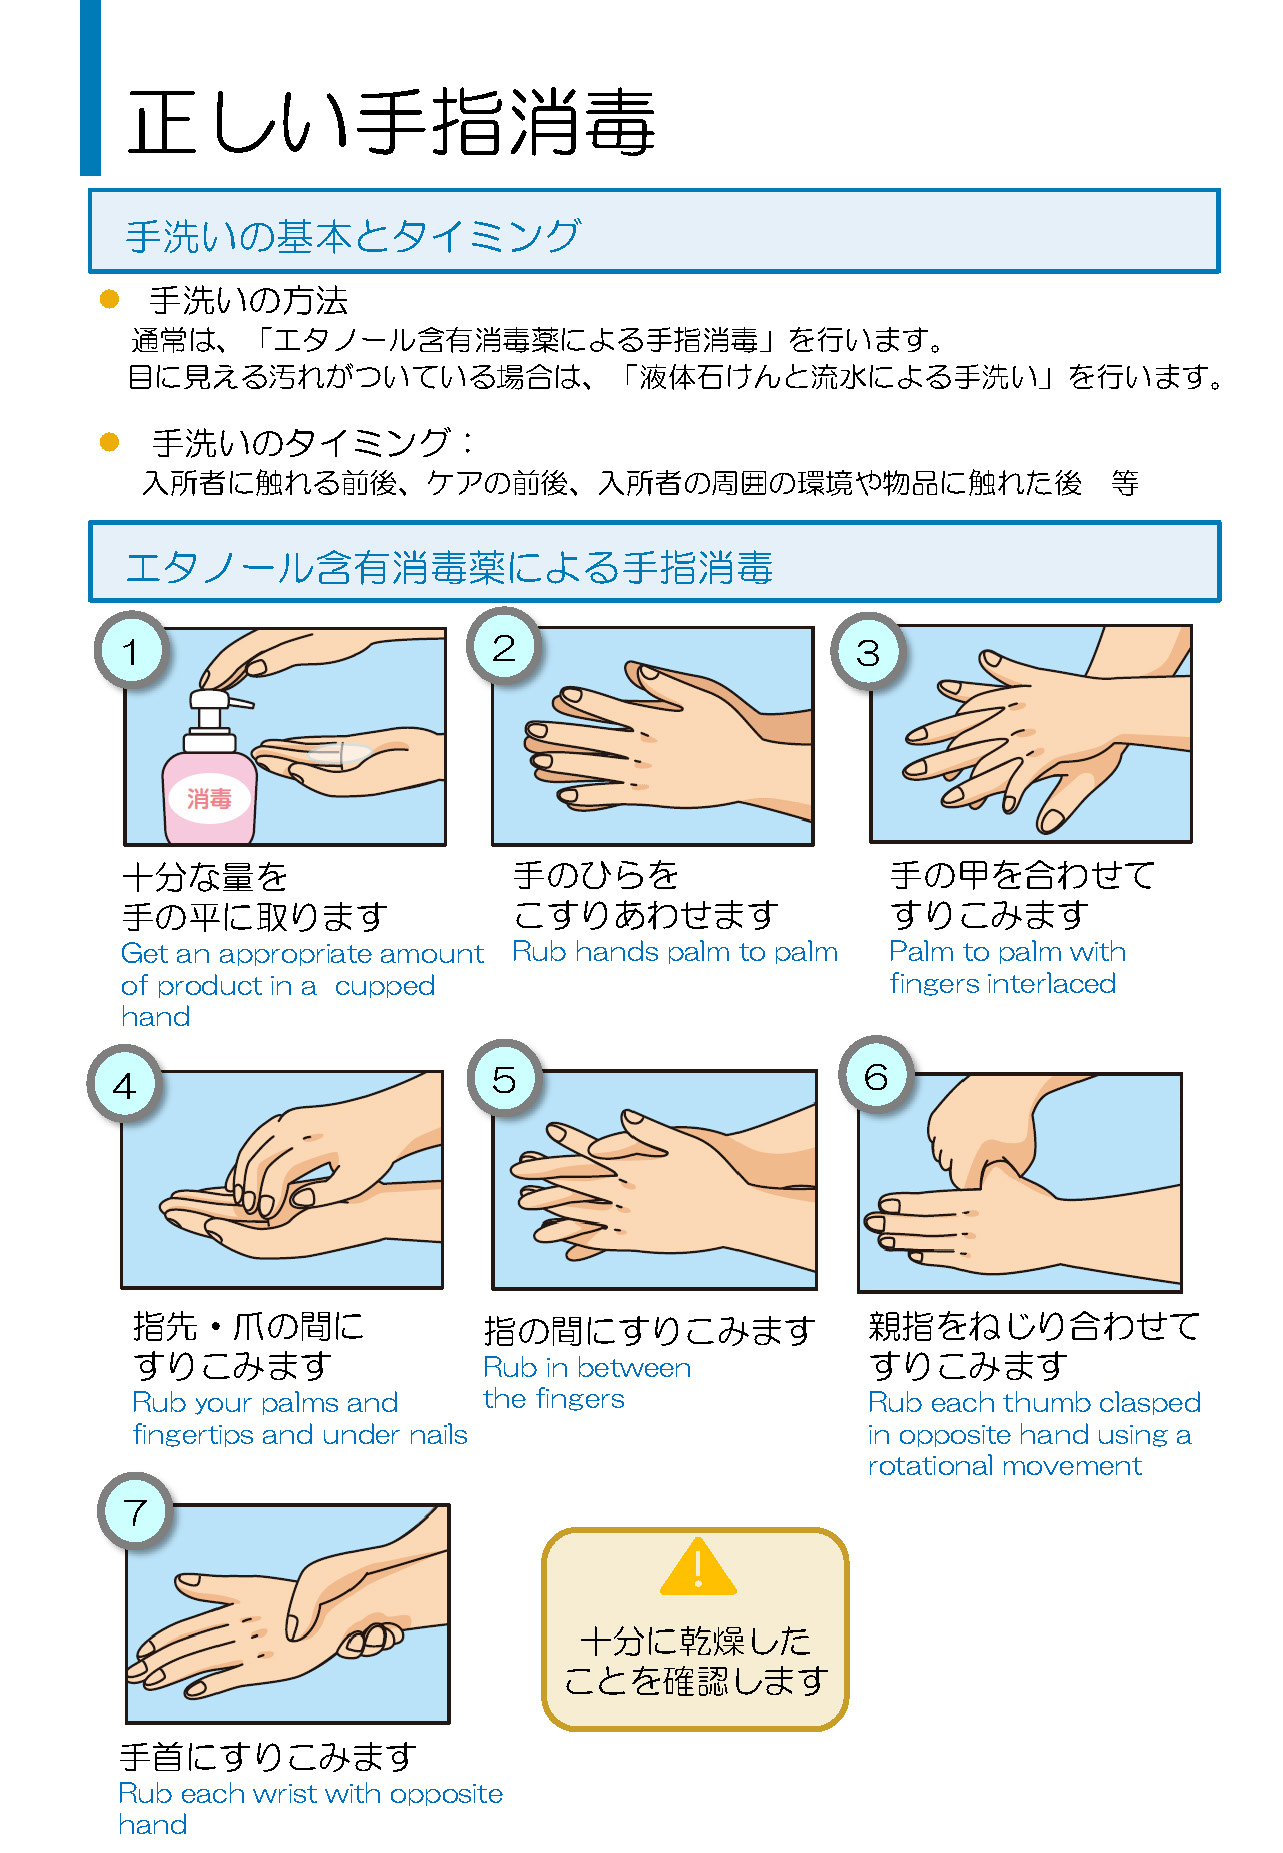 厚生 労働省 手洗い ポスター コロナ対策 マスク着用 手洗い 体温測定 消毒のお願いポスター 無料ダウンロード